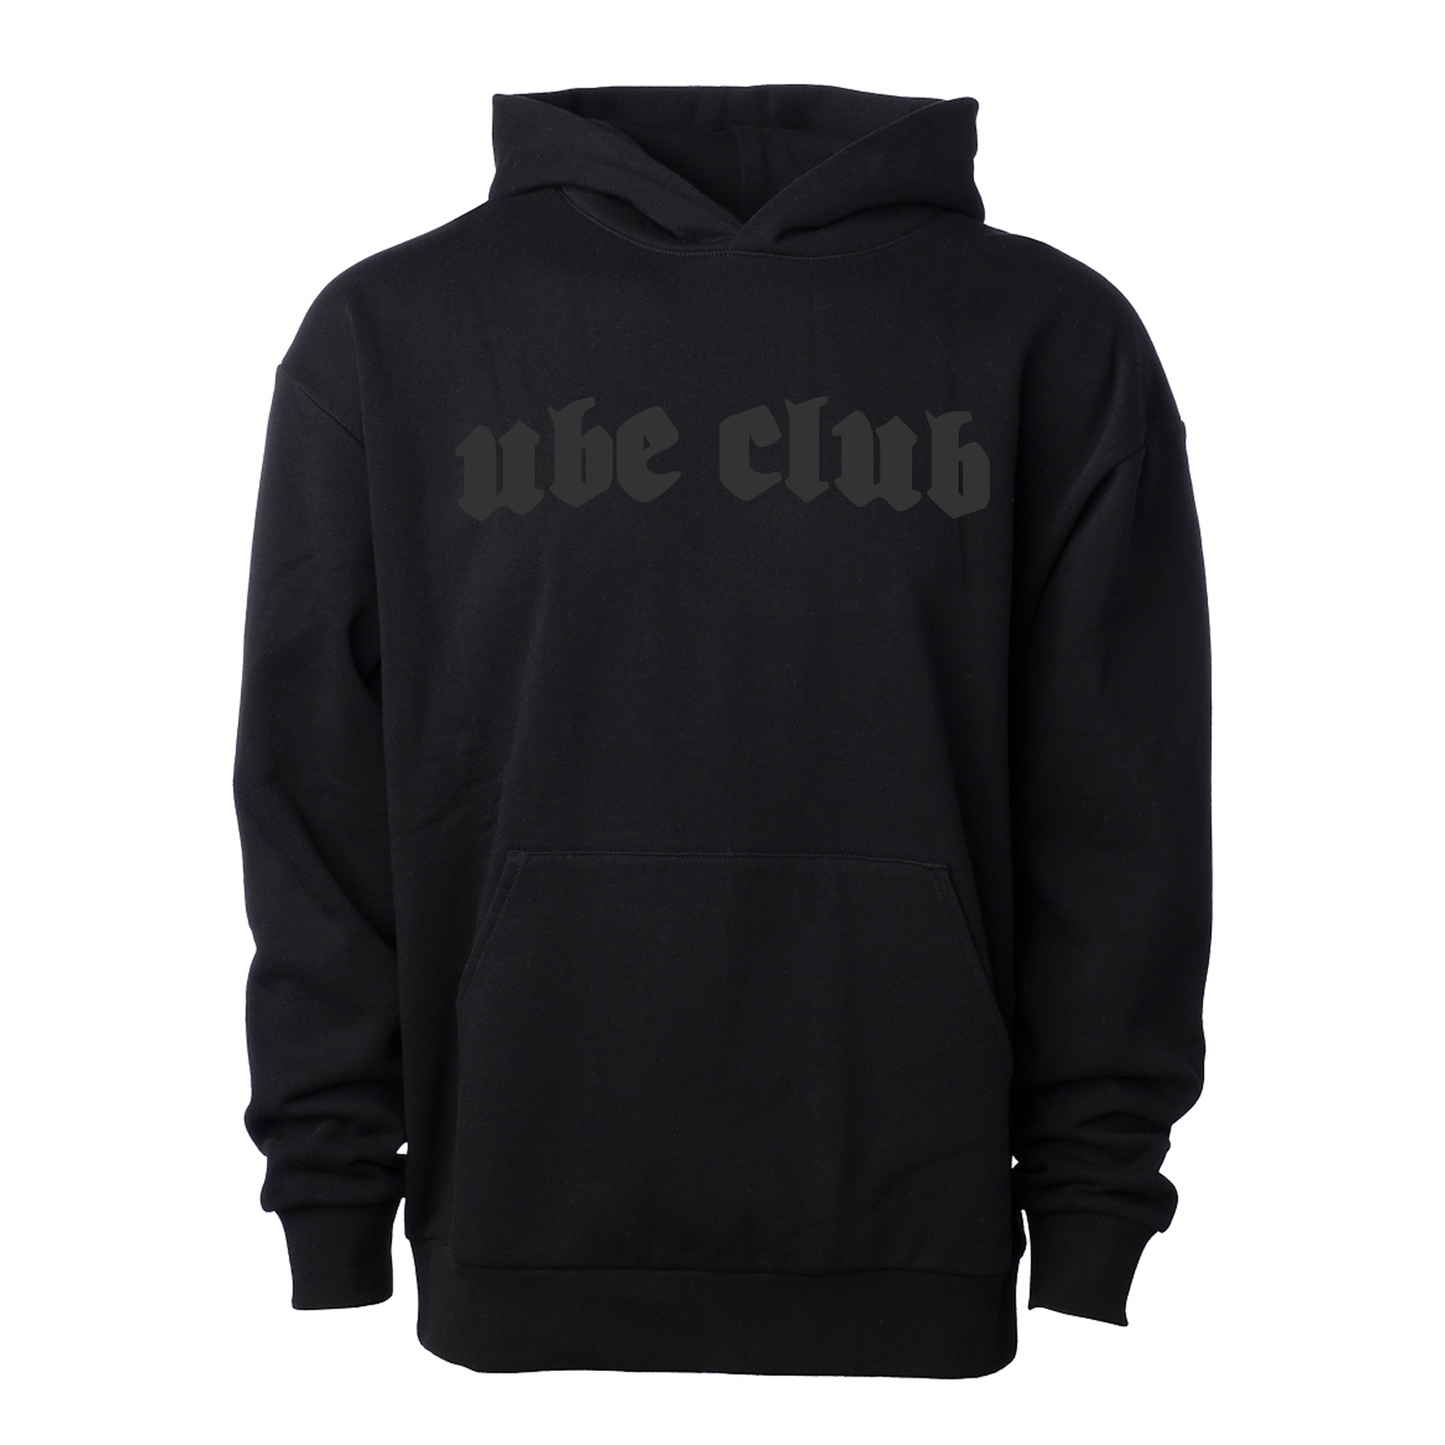 Blackout Ube Club hoodie